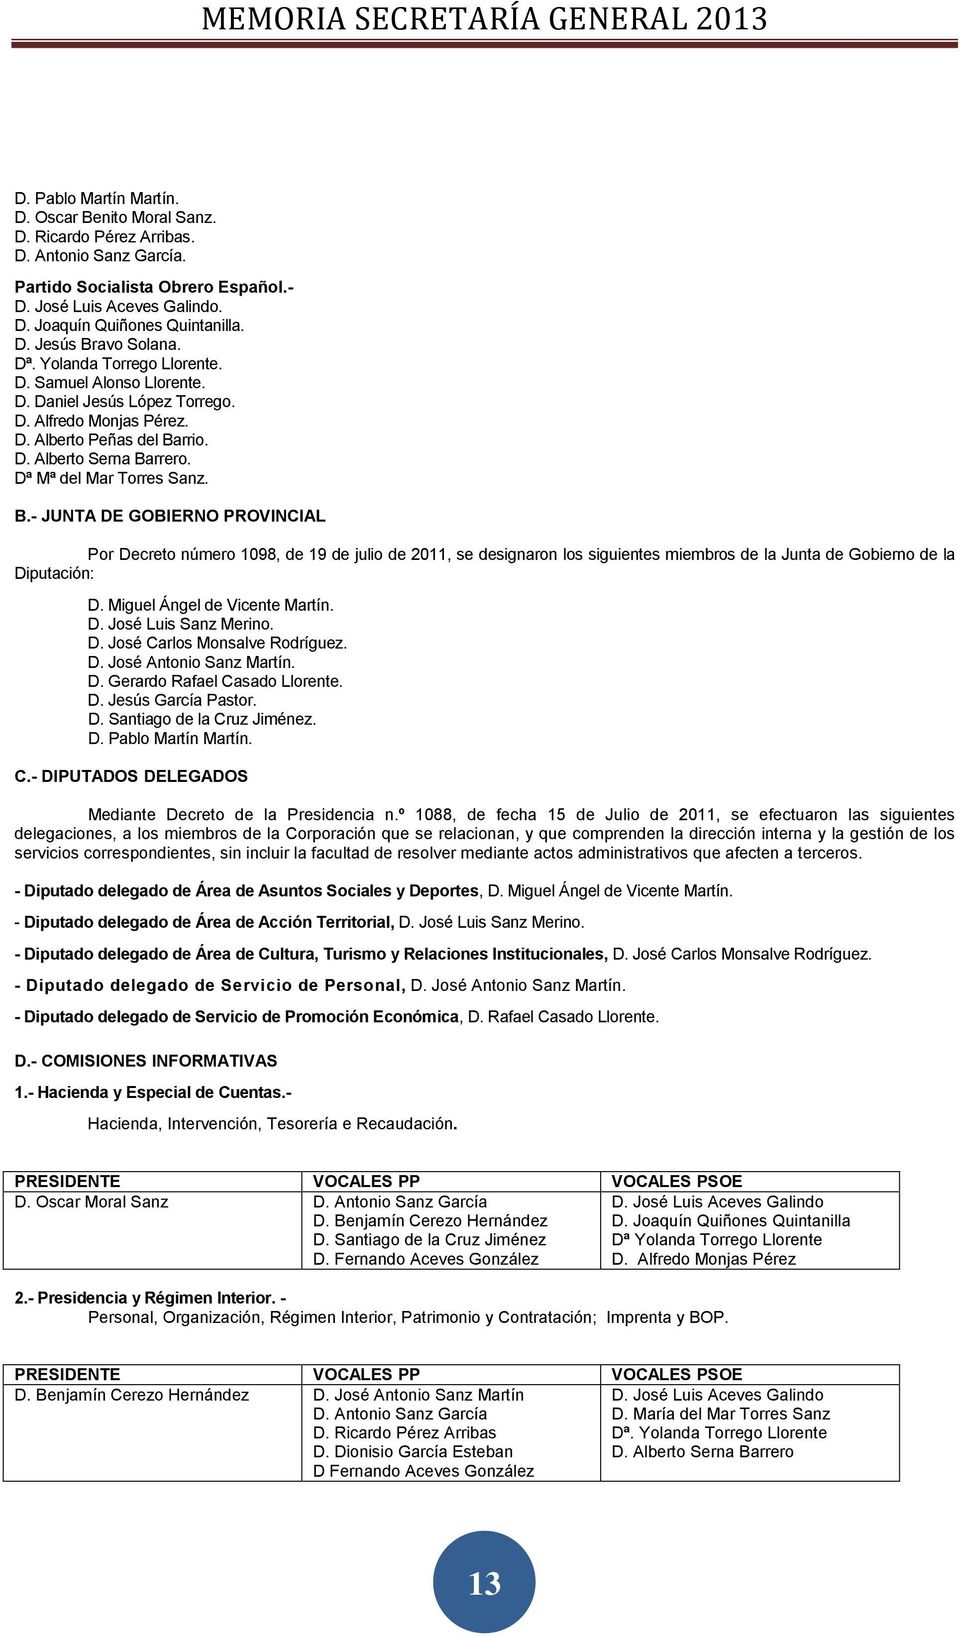 Dª Mª del Mar Torres Sanz. B.- JUNTA DE GOBIERNO PROVINCIAL Por Decreto número 1098, de 19 de julio de 2011, se designaron los siguientes miembros de la Junta de Gobierno de la Diputación: D.